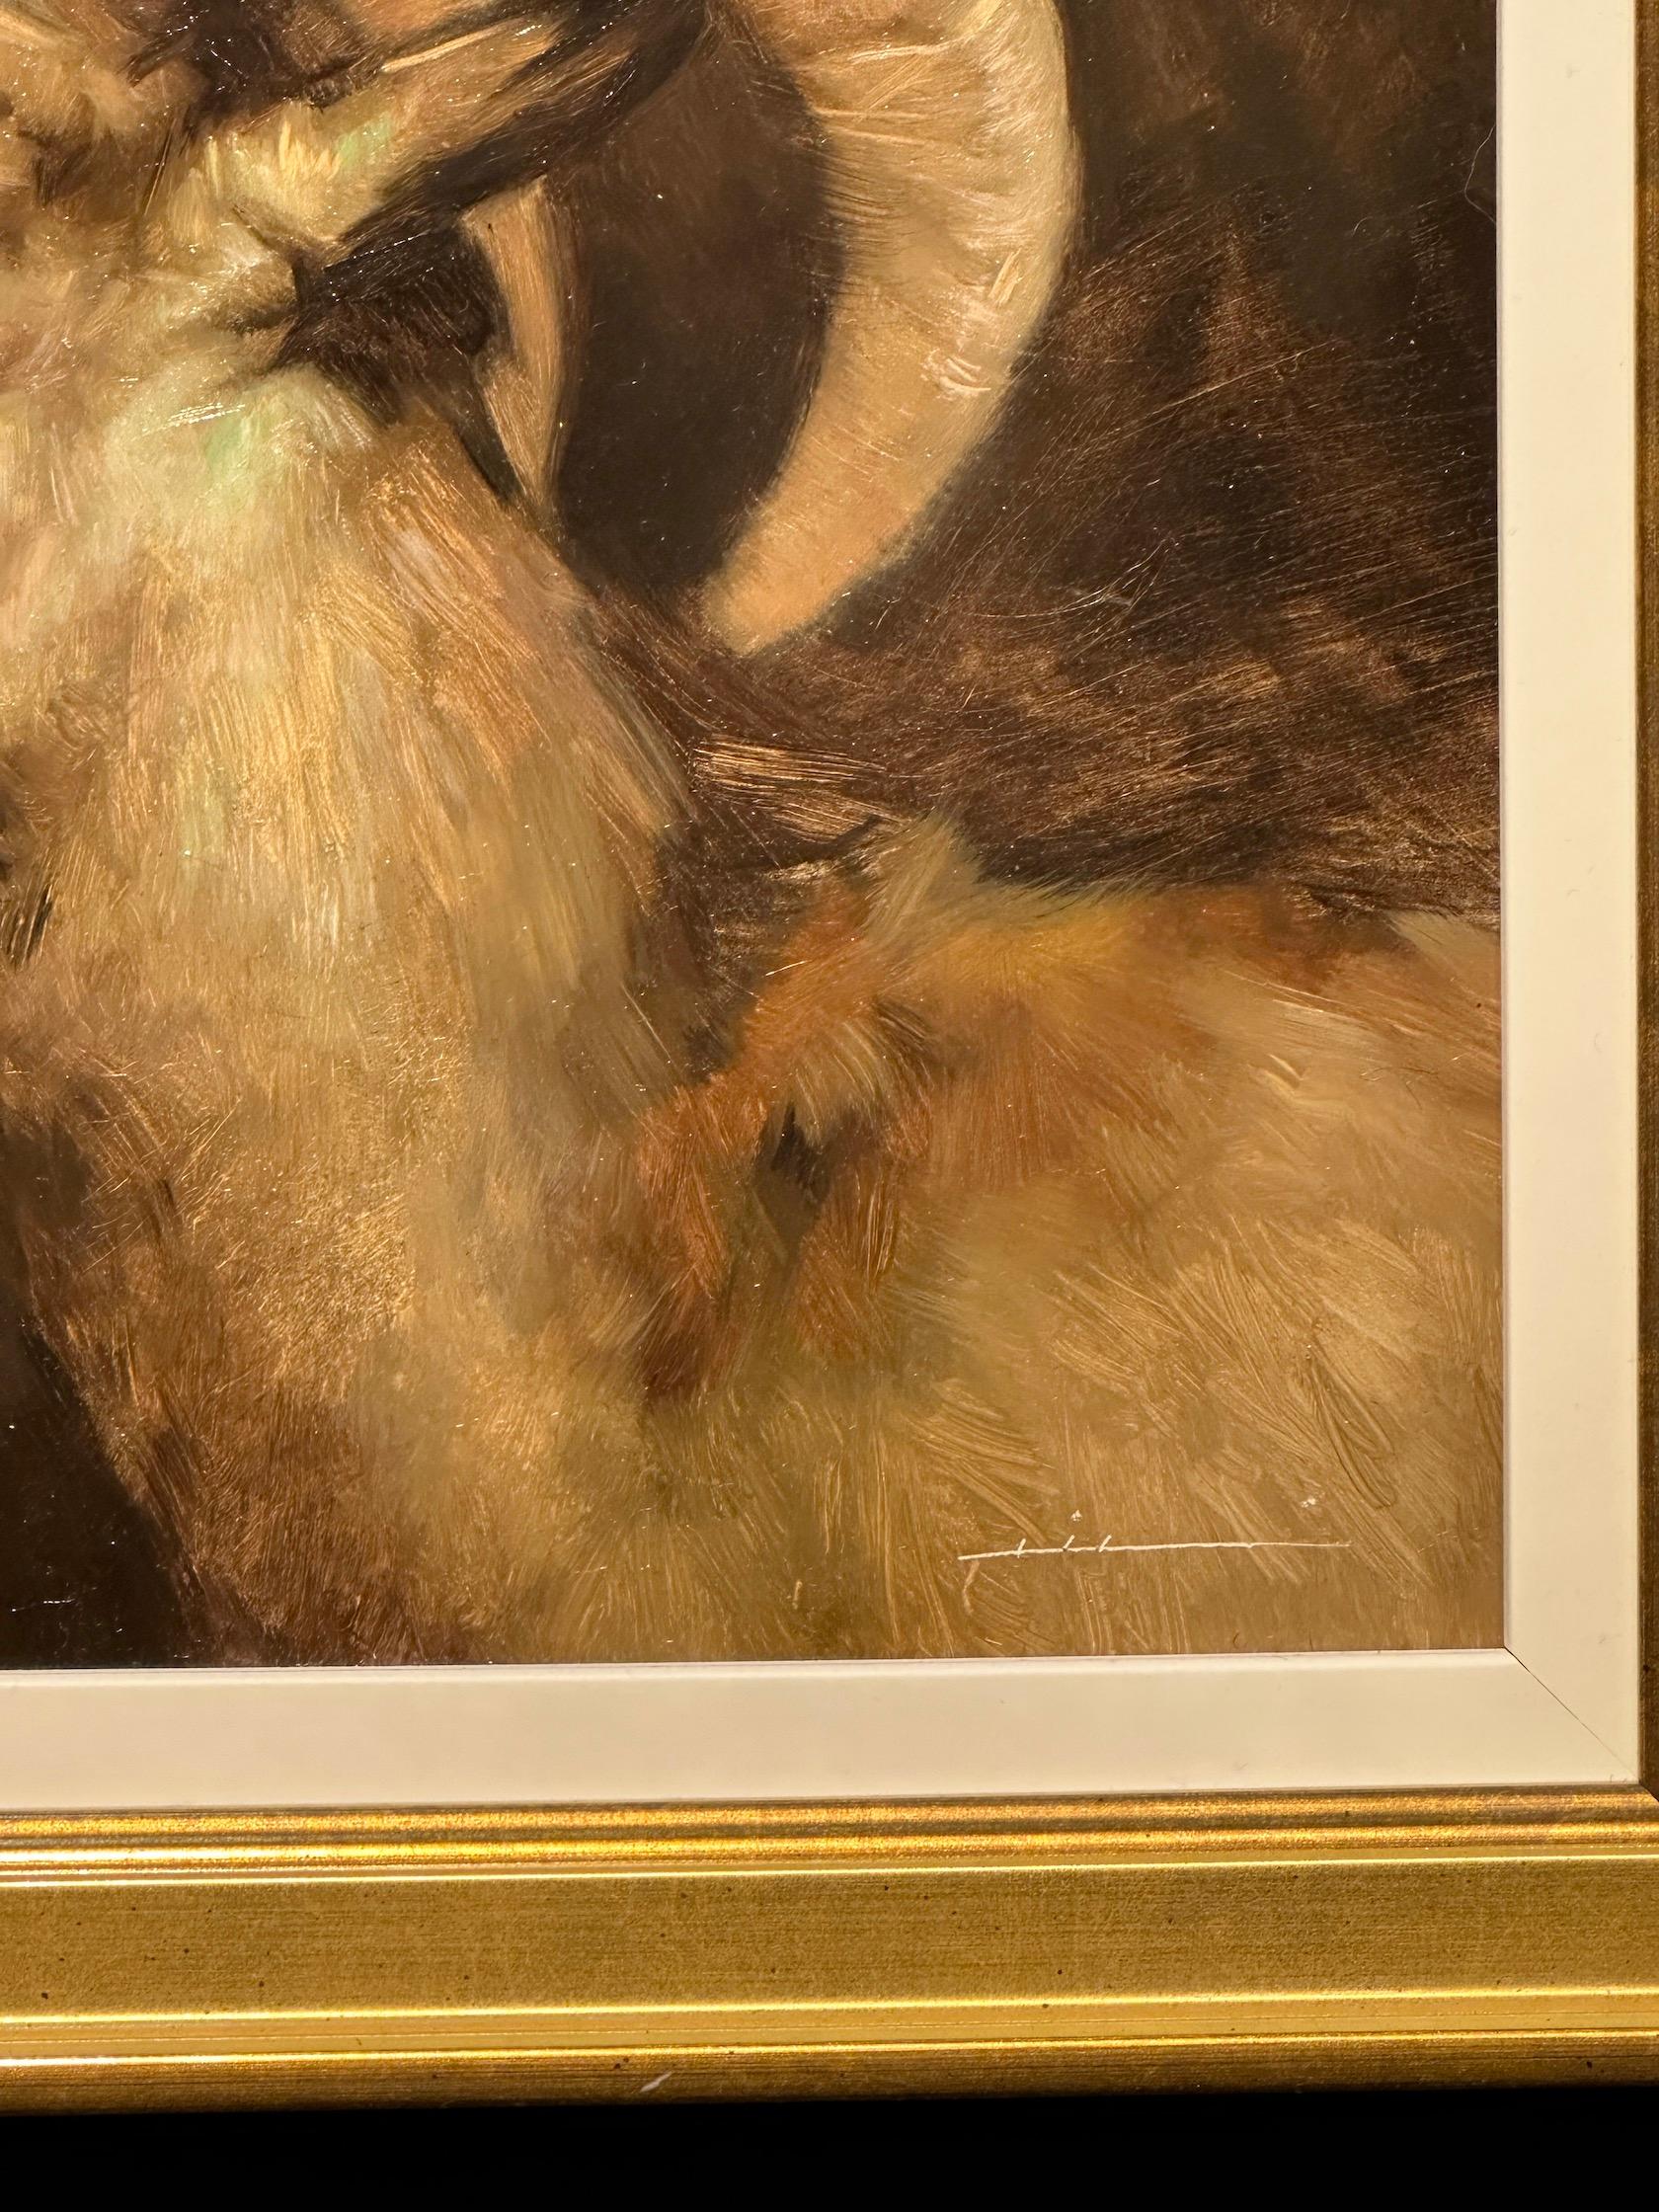 Magnifique portrait d'un bélier par l'un des meilleurs peintres animaliers actuels.

L'artiste a créé un portrait étonnant, plein de vie et de caractère. 

Observez attentivement la qualité de la peinture des yeux, ils sont étonnants. La texture de